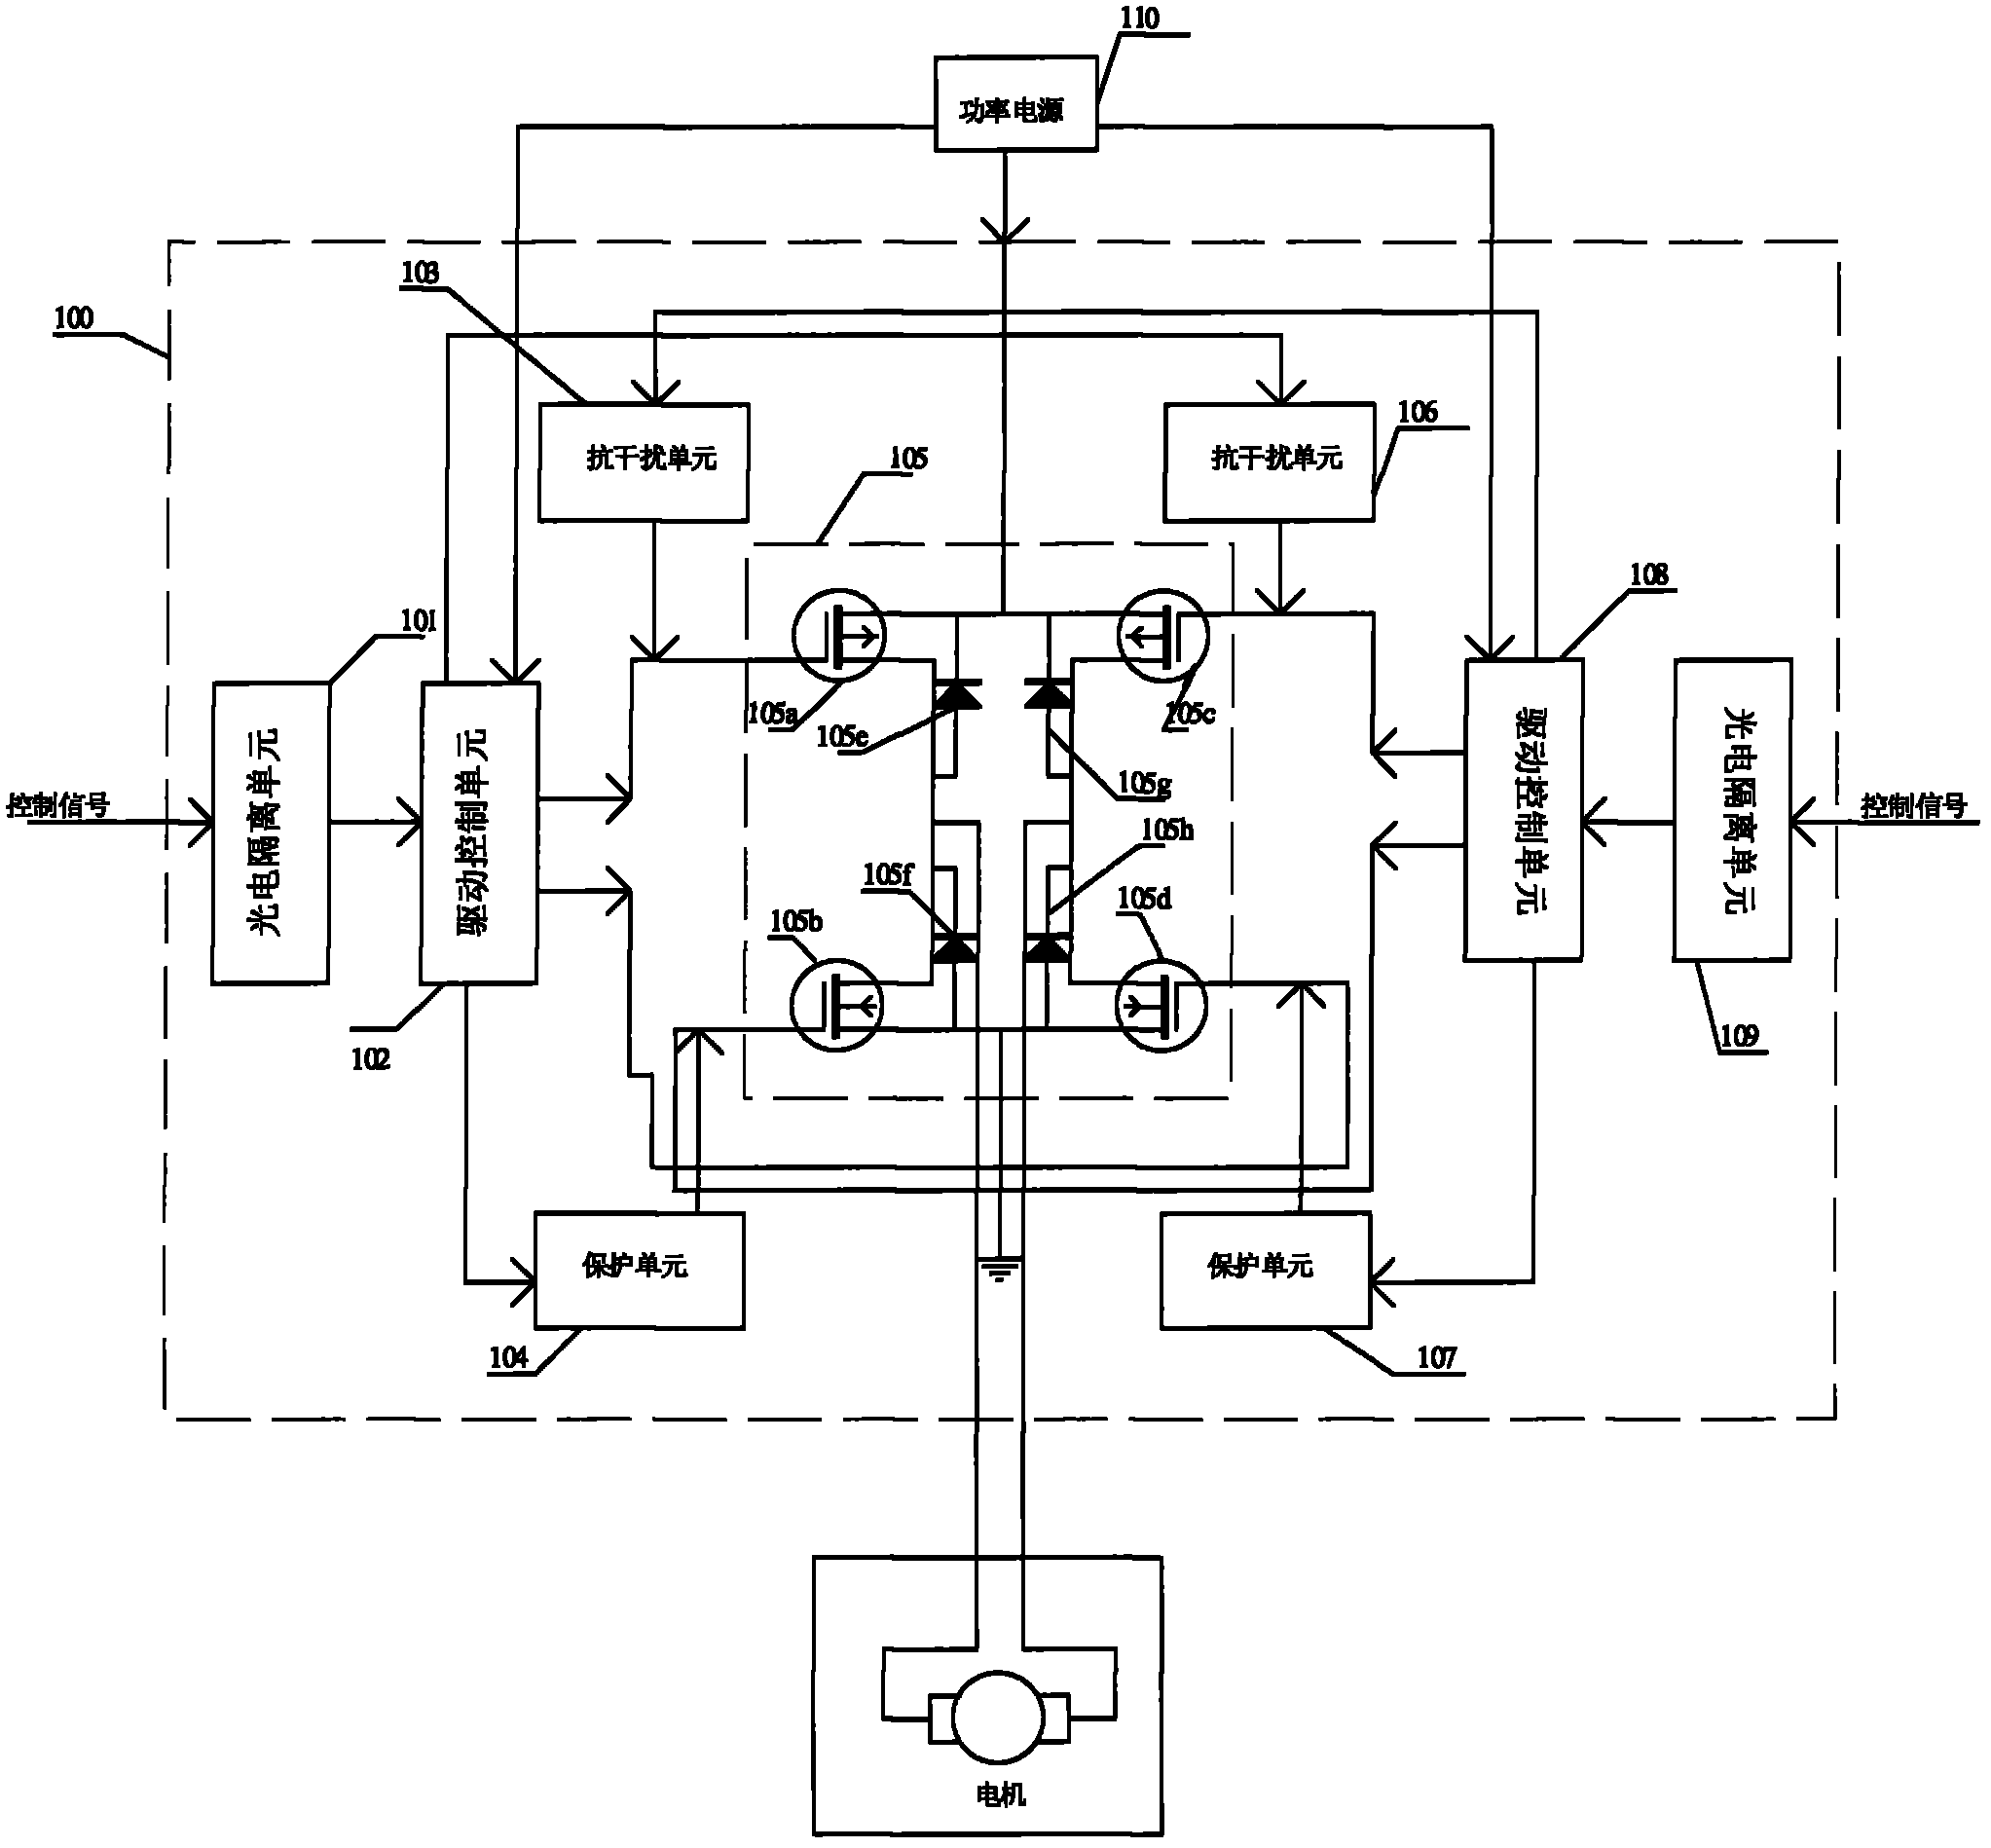 H-bridge driving control circuit of motor